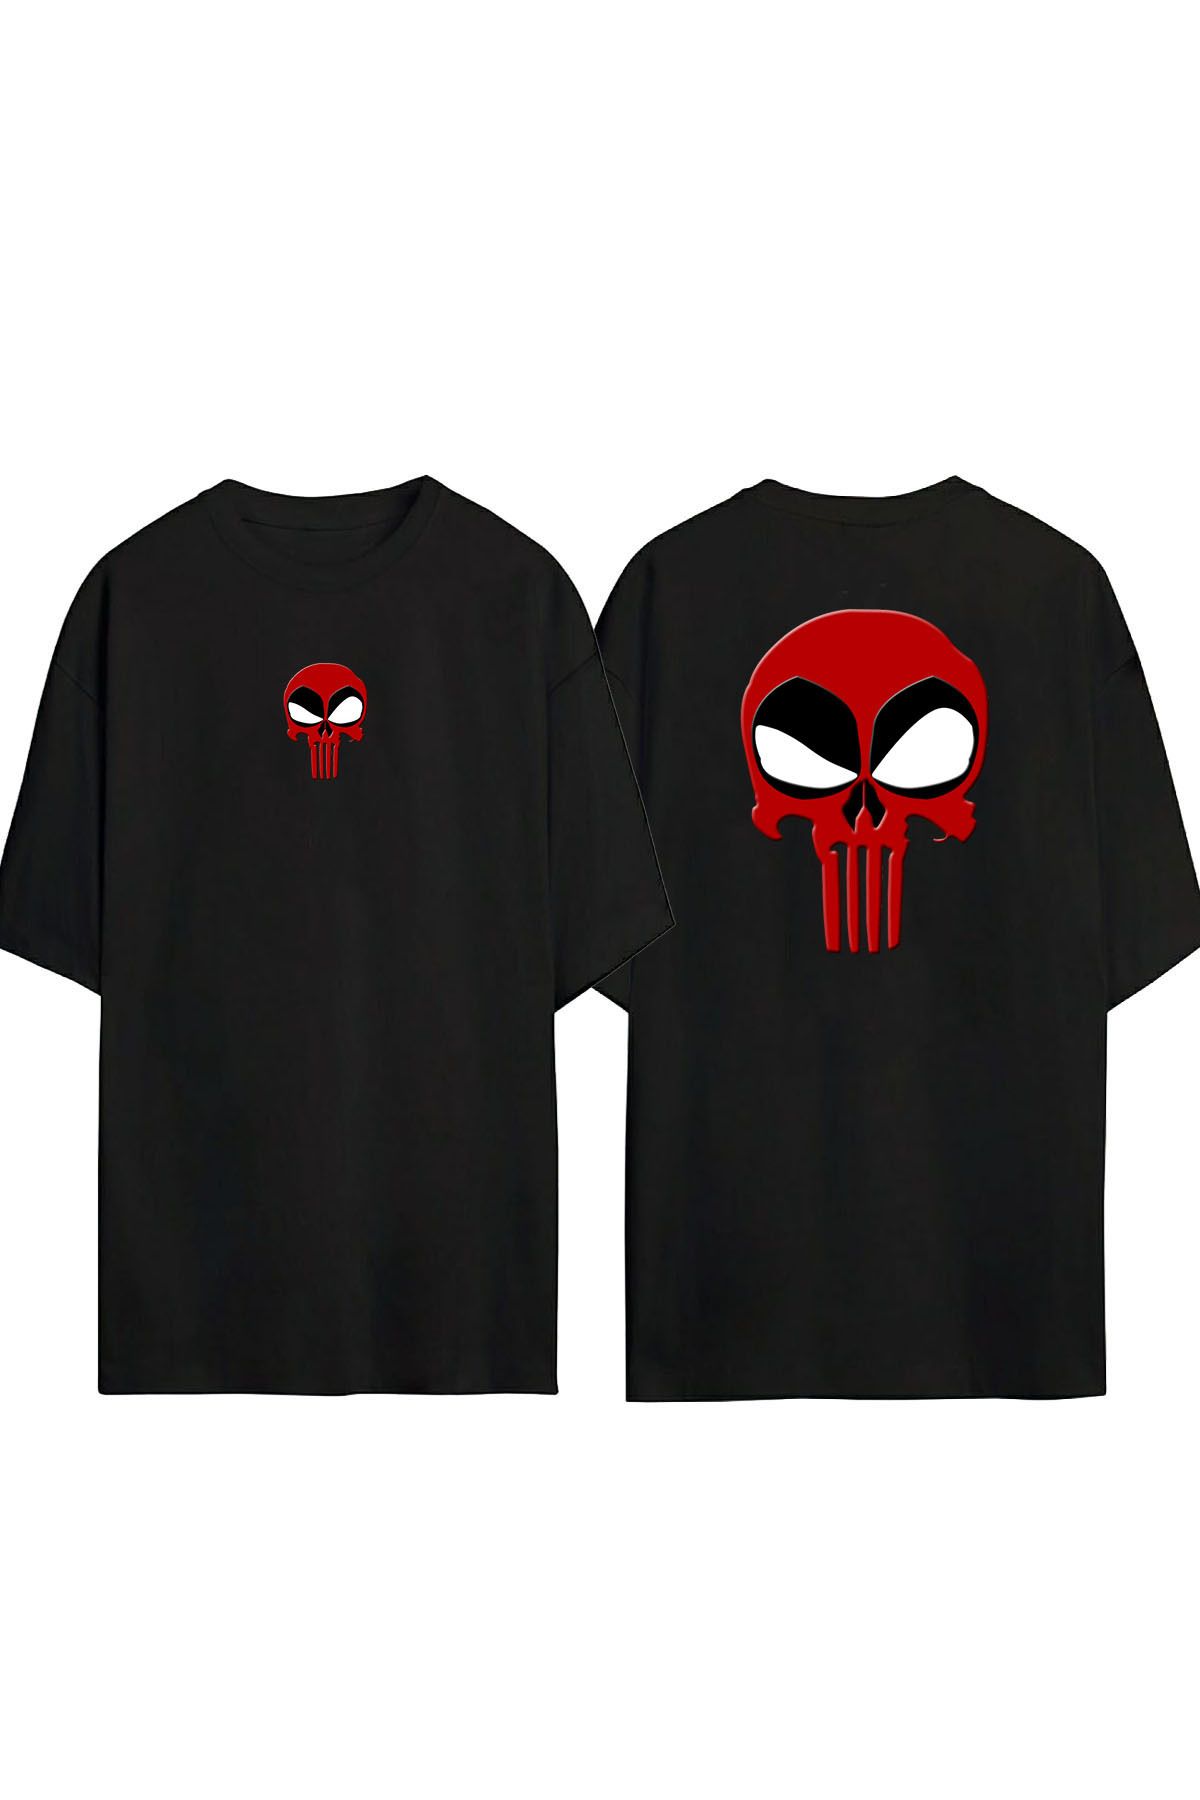 THEWERT Unisex Deadpool X Punisher İllüstrasyon Ön Arka Baskılı Sıyah Oversize T-shirt